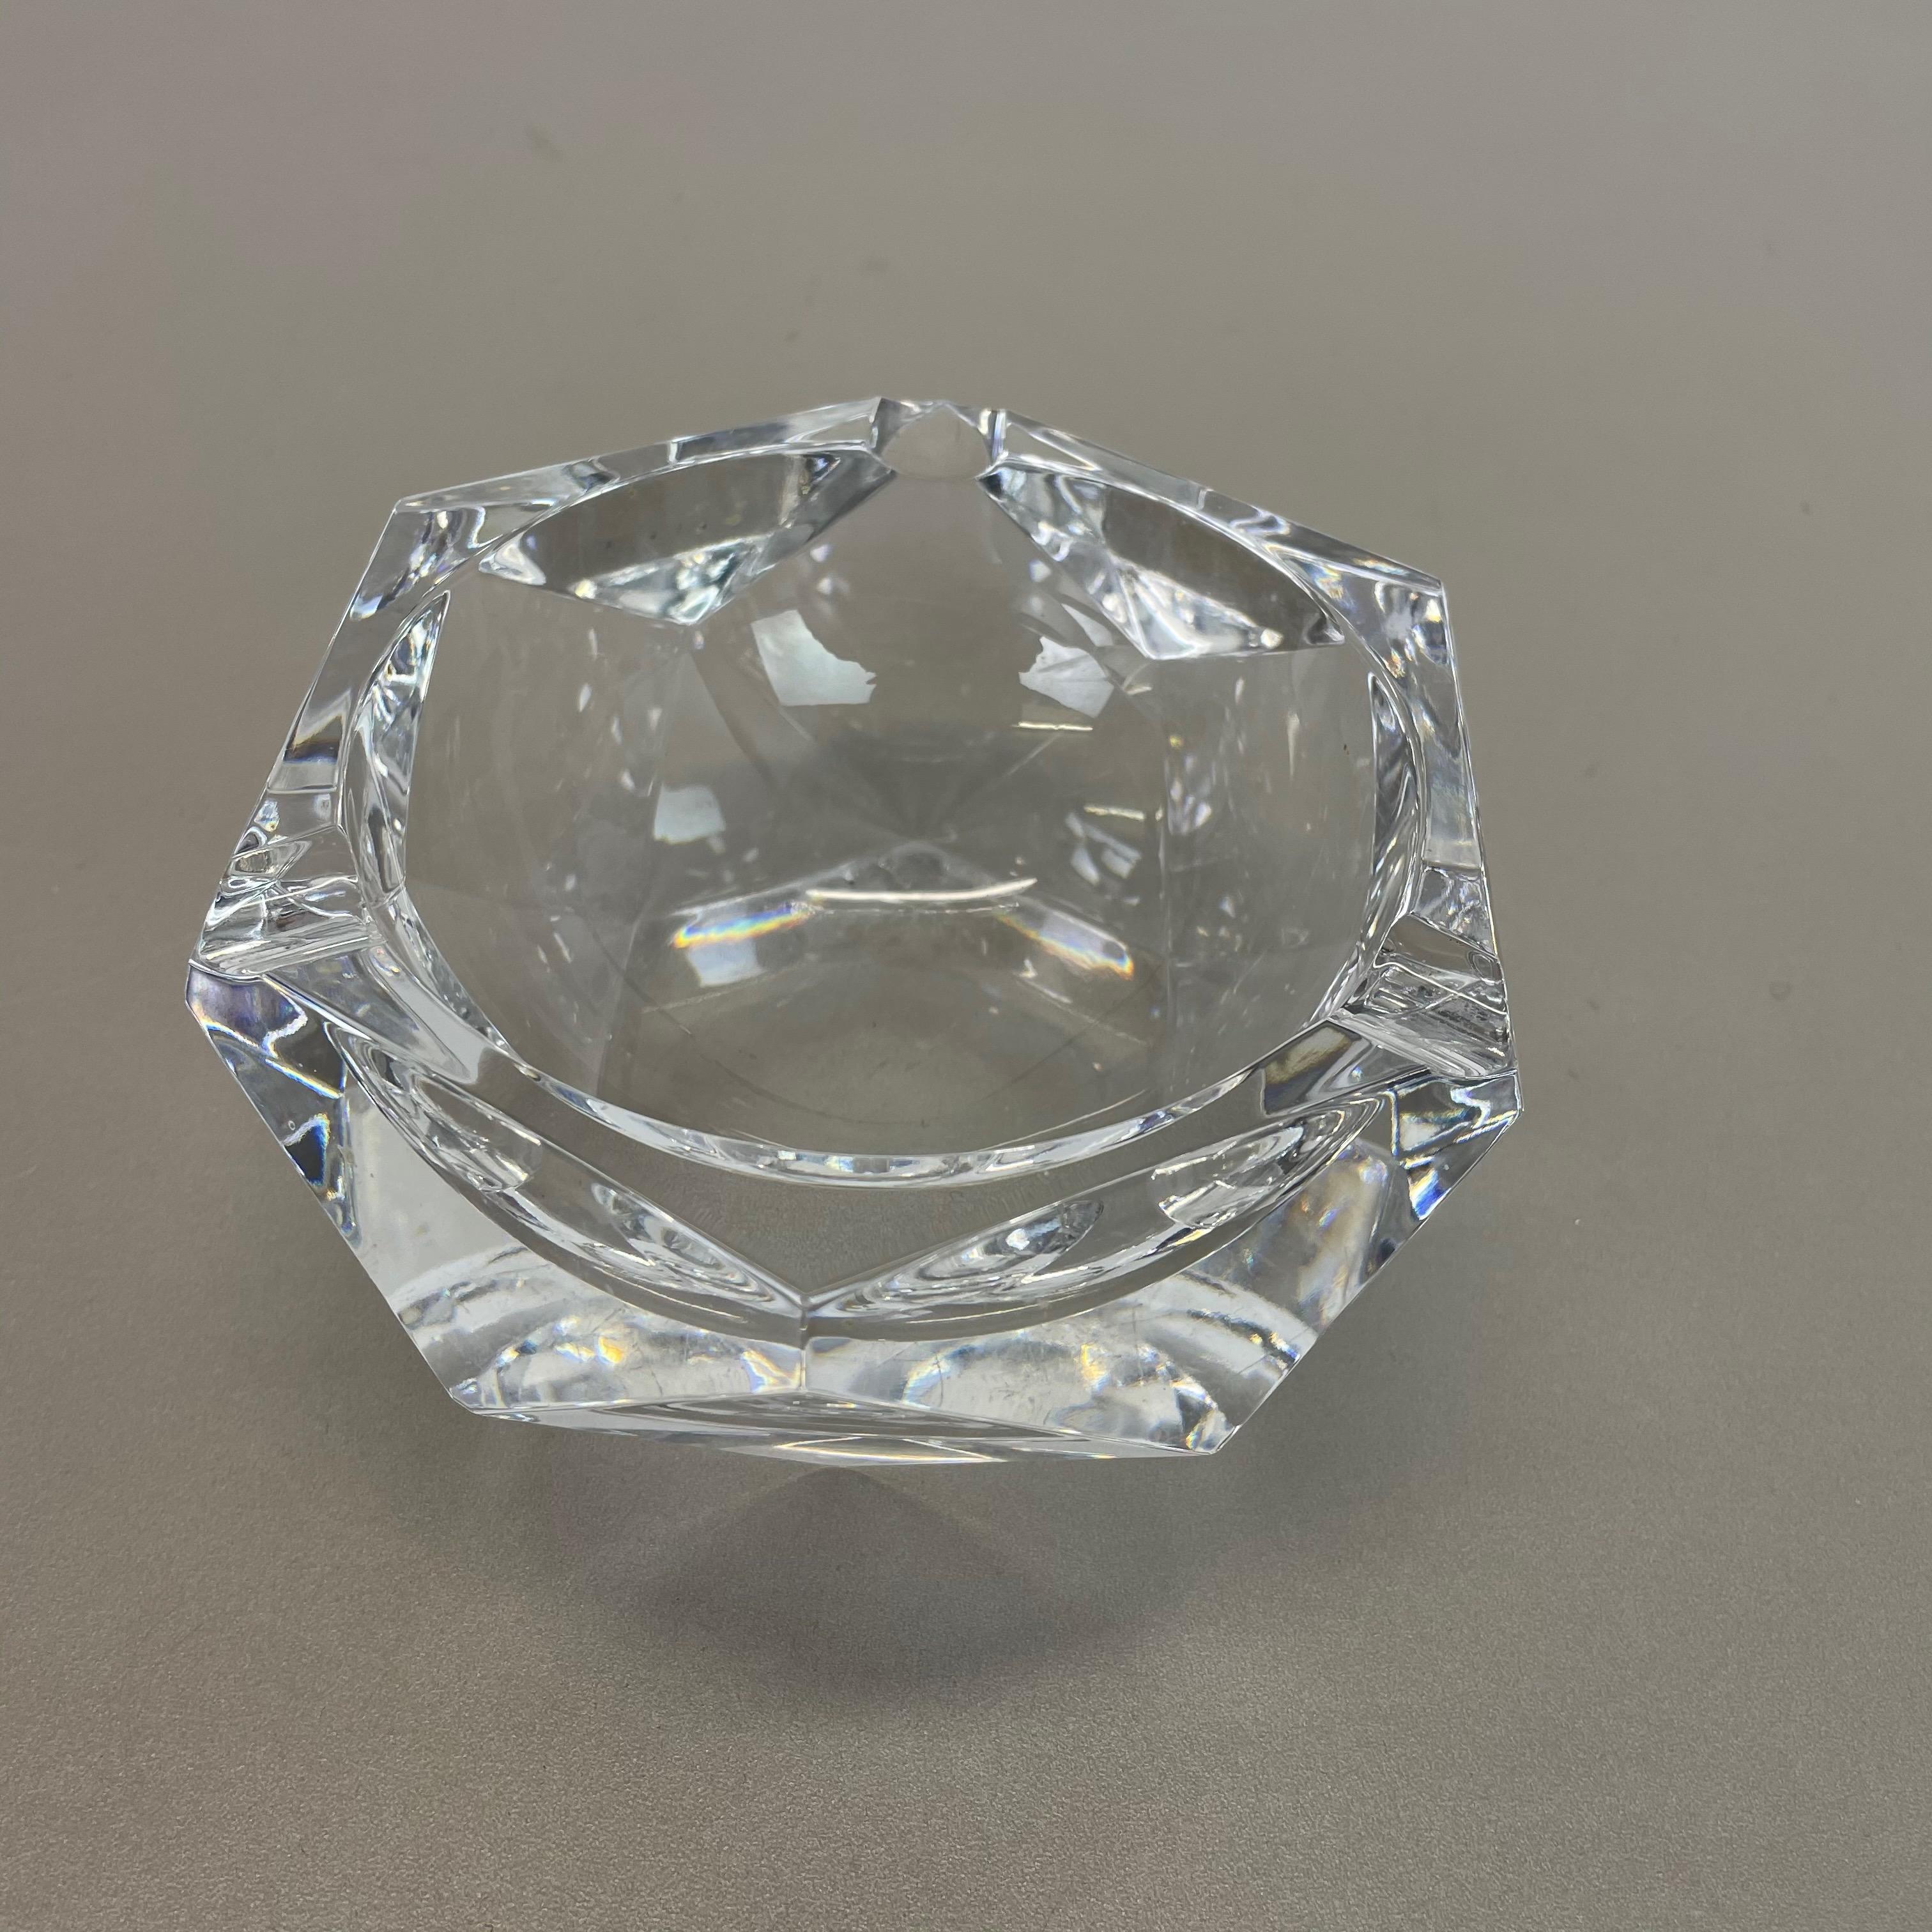 kristall aschenbecher